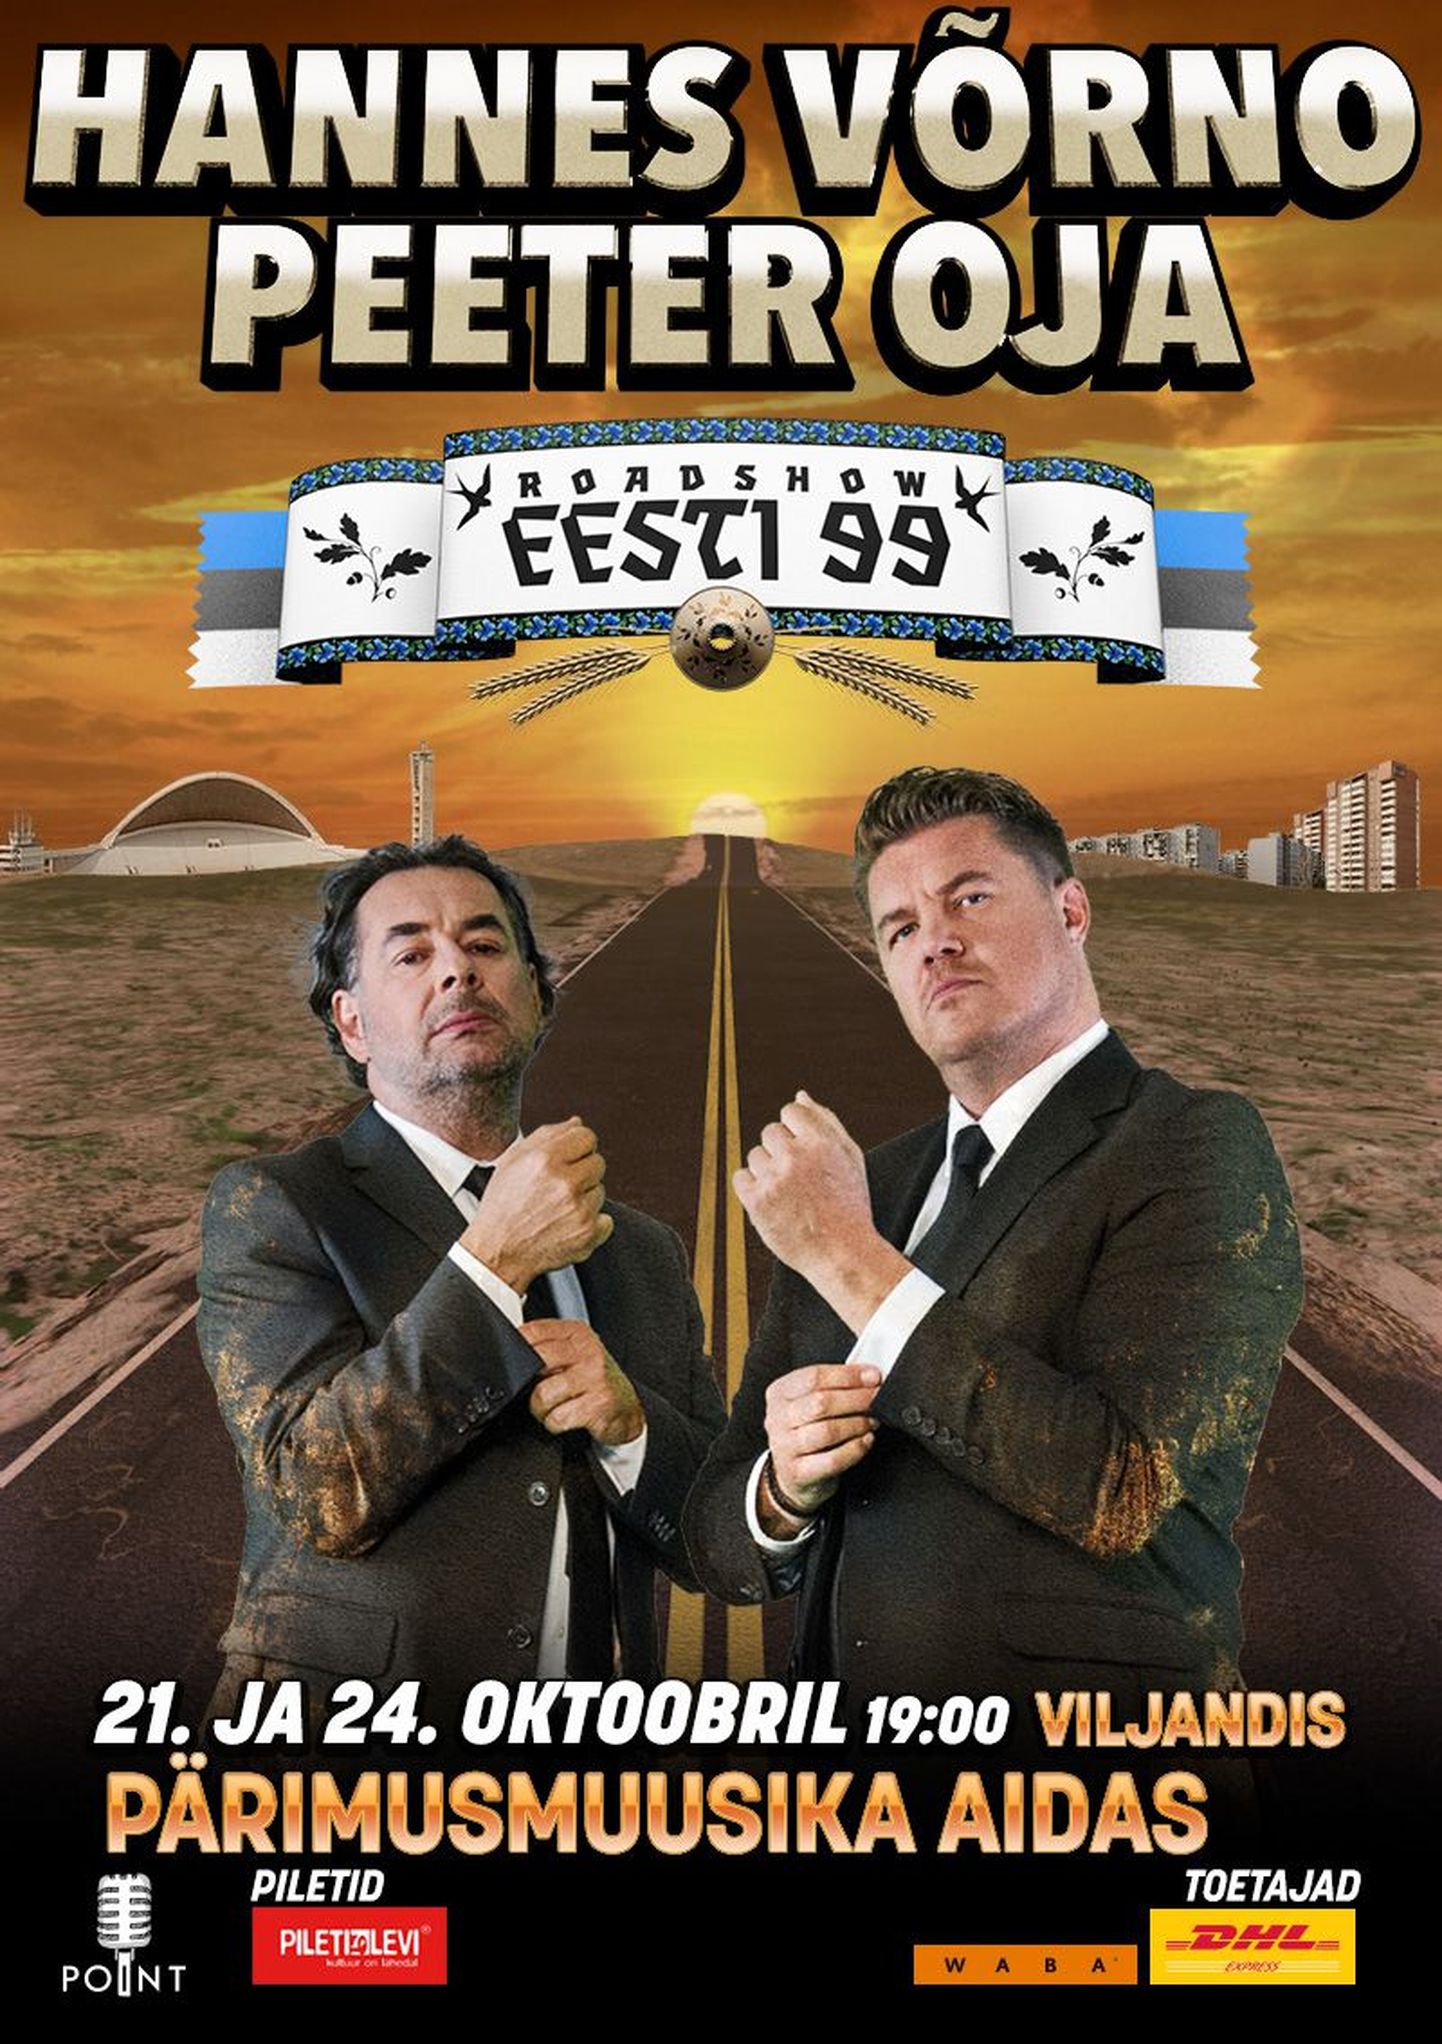 Hannes Võrno ja Peeter Oja roadshow "Eesti 99" pärimusmuusika aidas